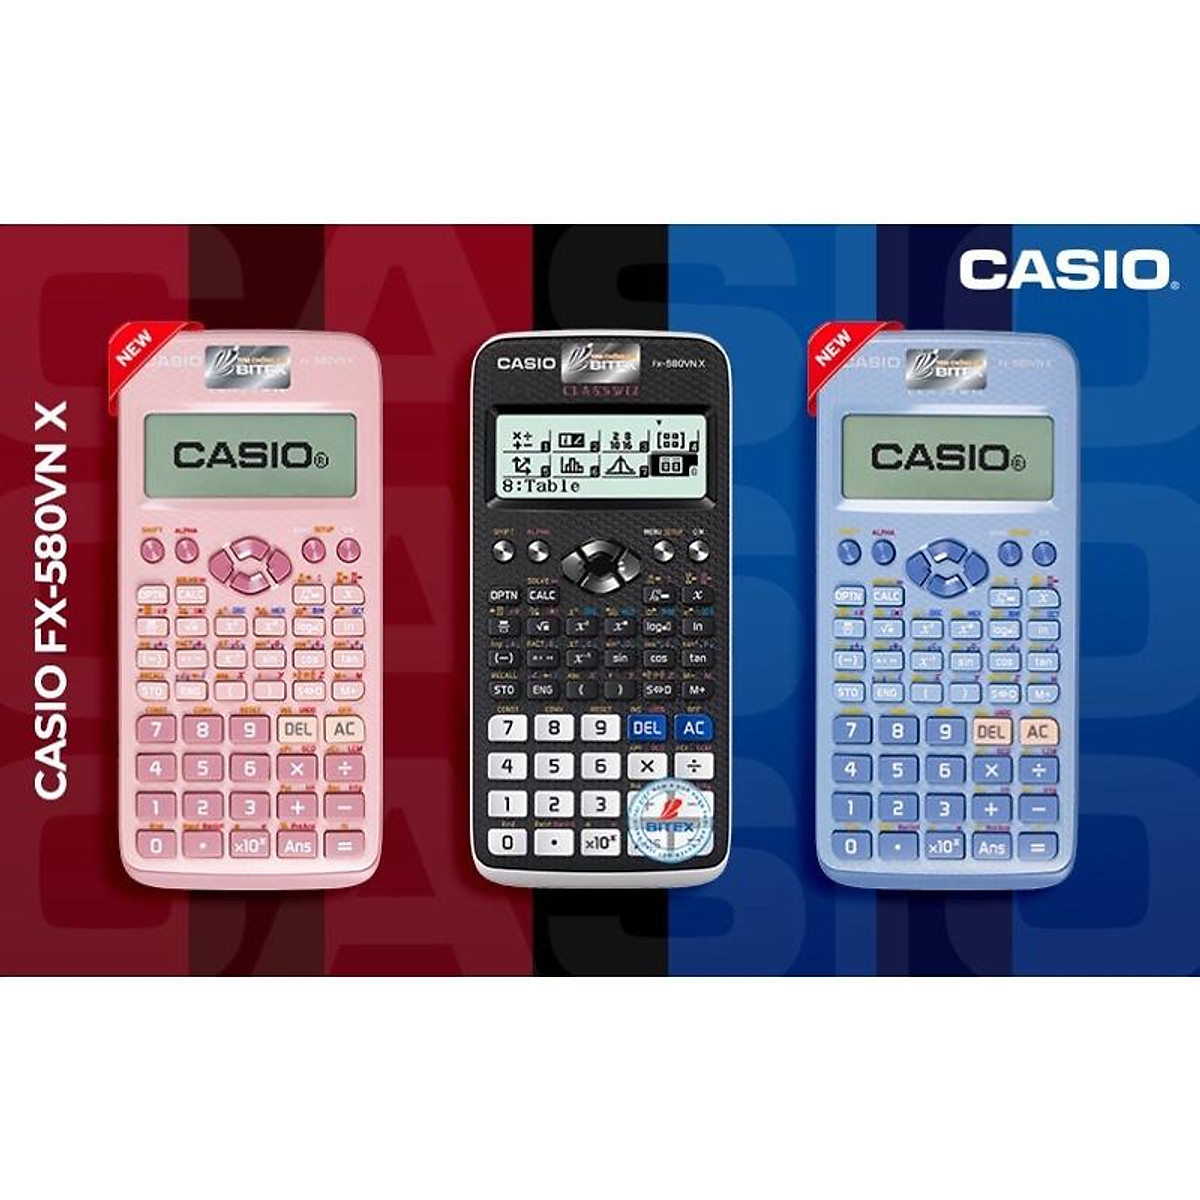 Dòng máy tính Casio 580 với tính năng giải phương trình bậc 4 